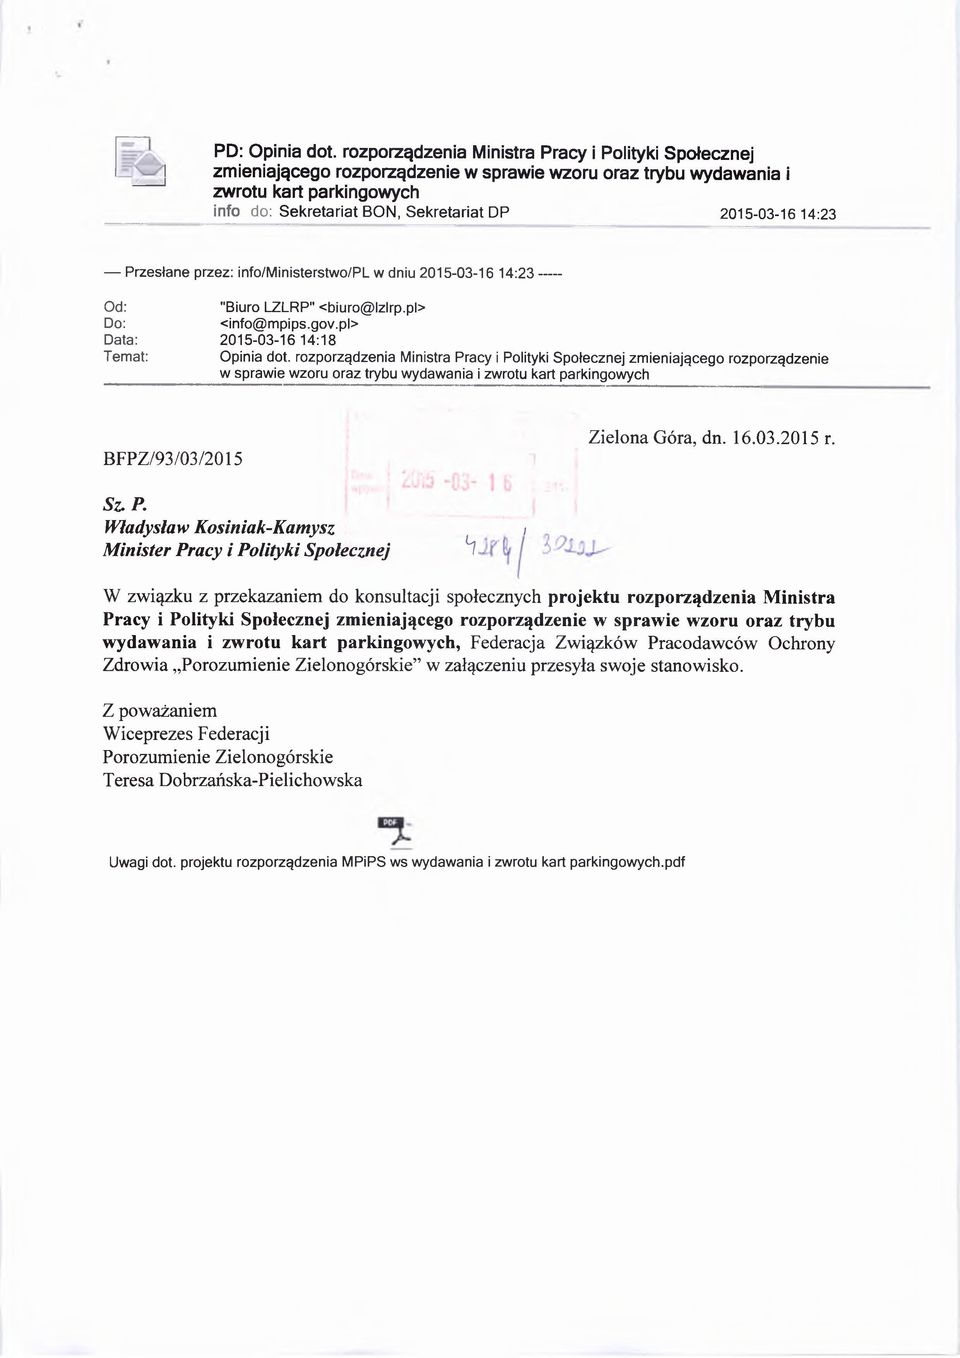 14:23 Przesłane przez: info/ministerstwo/pl w dniu 2015-03-16 14:23---- Od: "Biuro LZLRP" <biuro@lzlrp.pl> Do: <info@mpips.gov.pl> Data: 2015-03-16 14:18 Temat: Opinia dot.